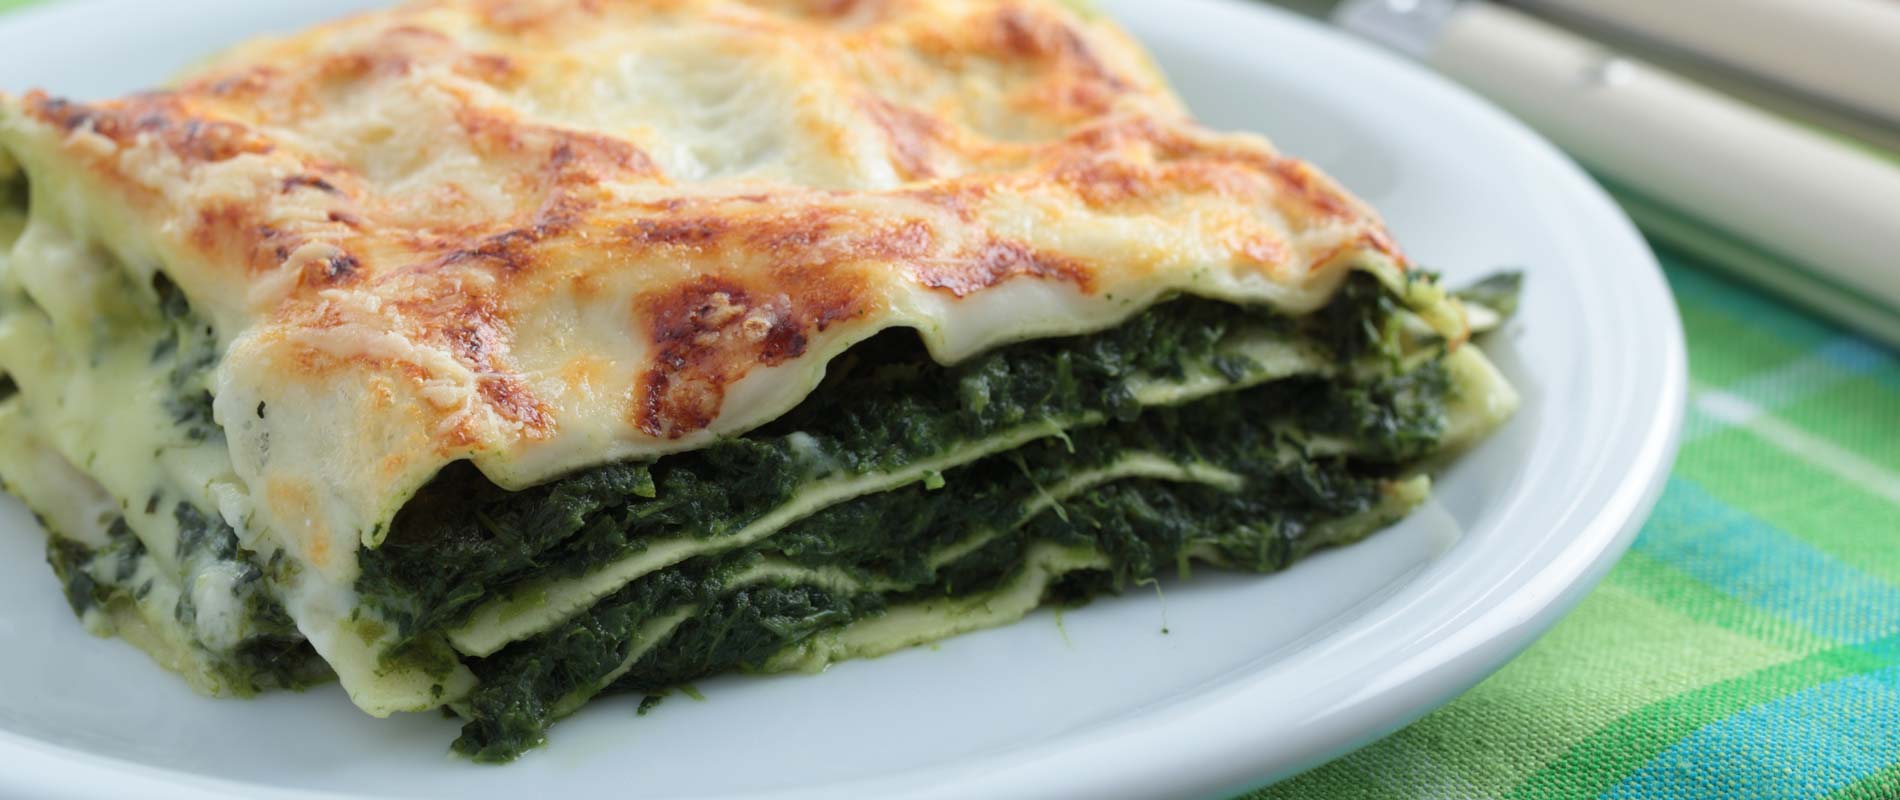 Enjoy a tasty spinach lasagne